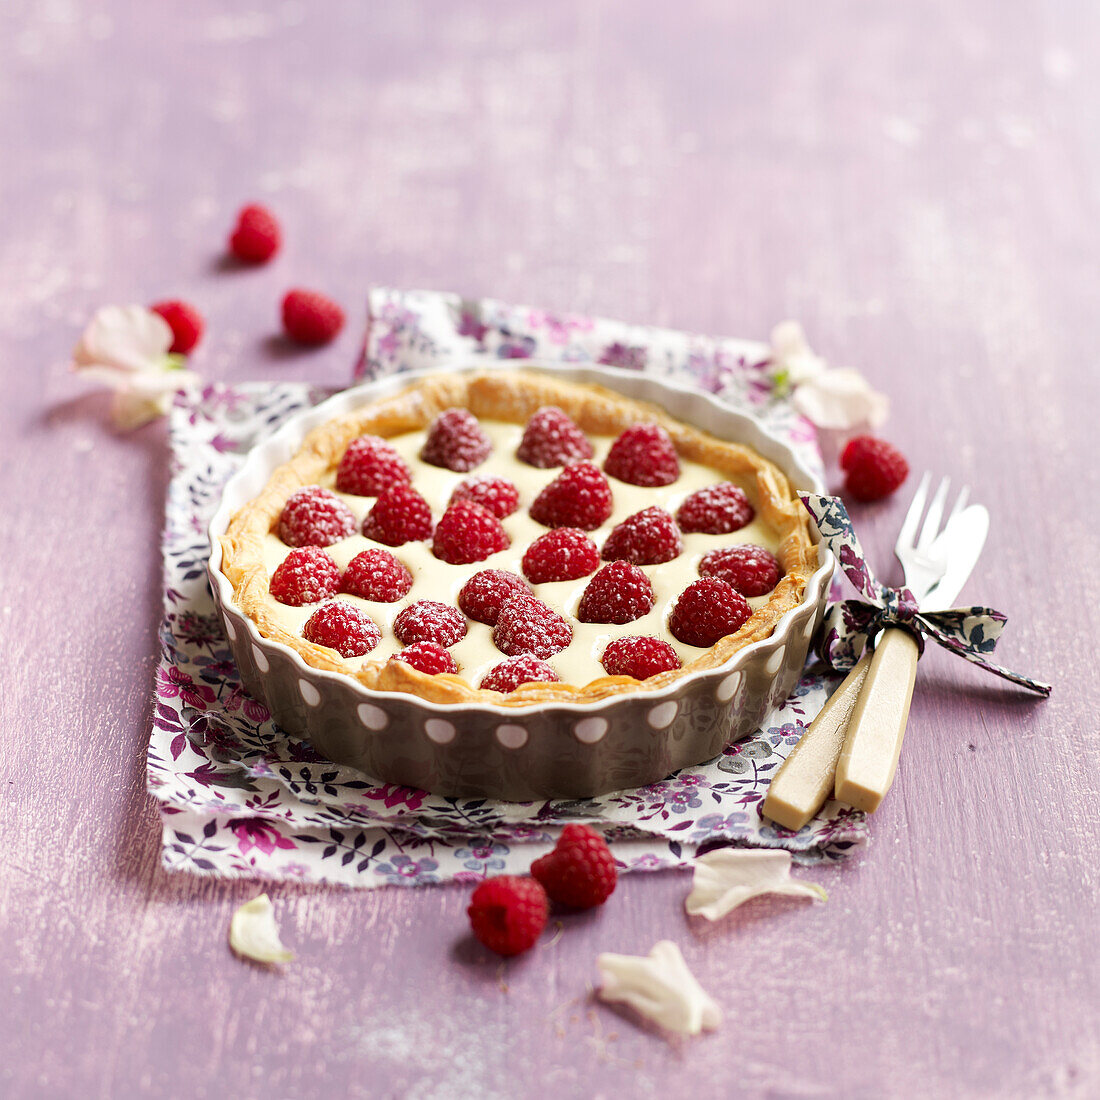 Raspberry and mascarpone pie